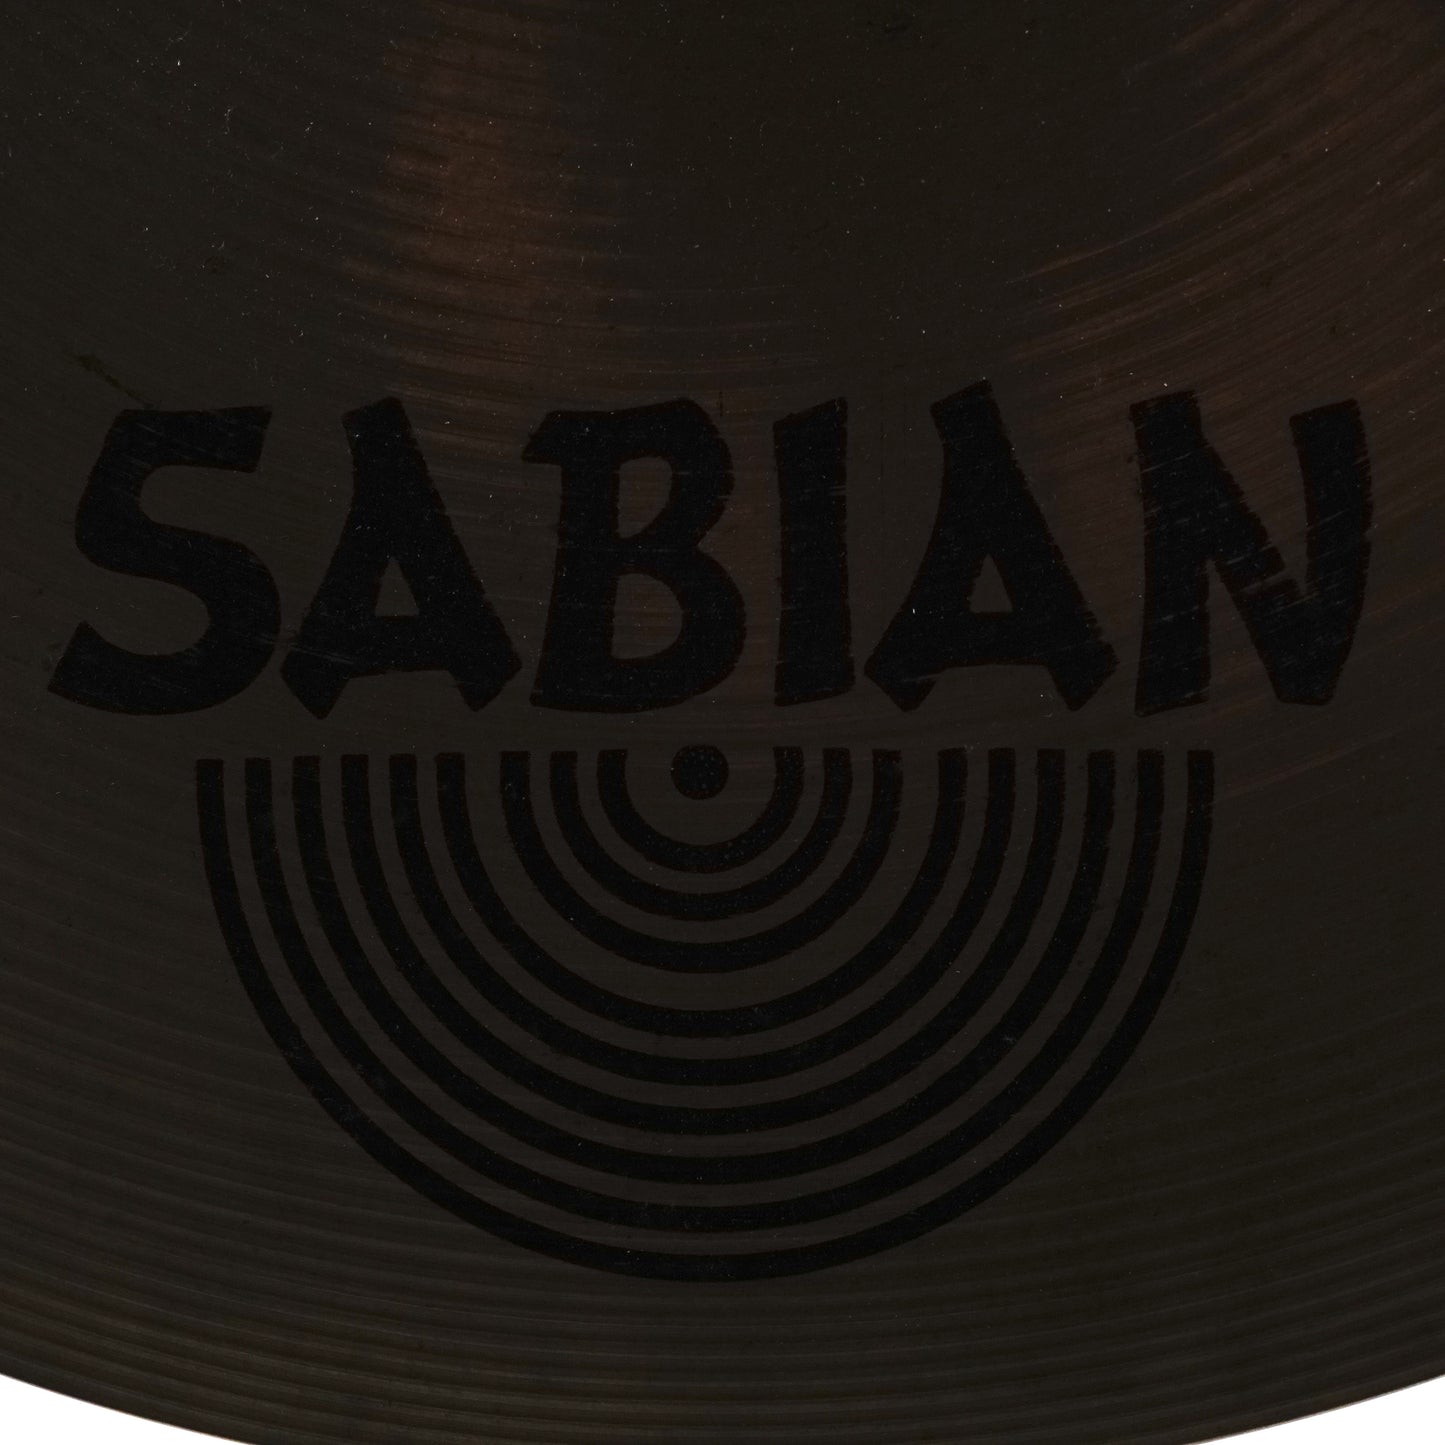 Sabian 21” AADry Ride Cymbal